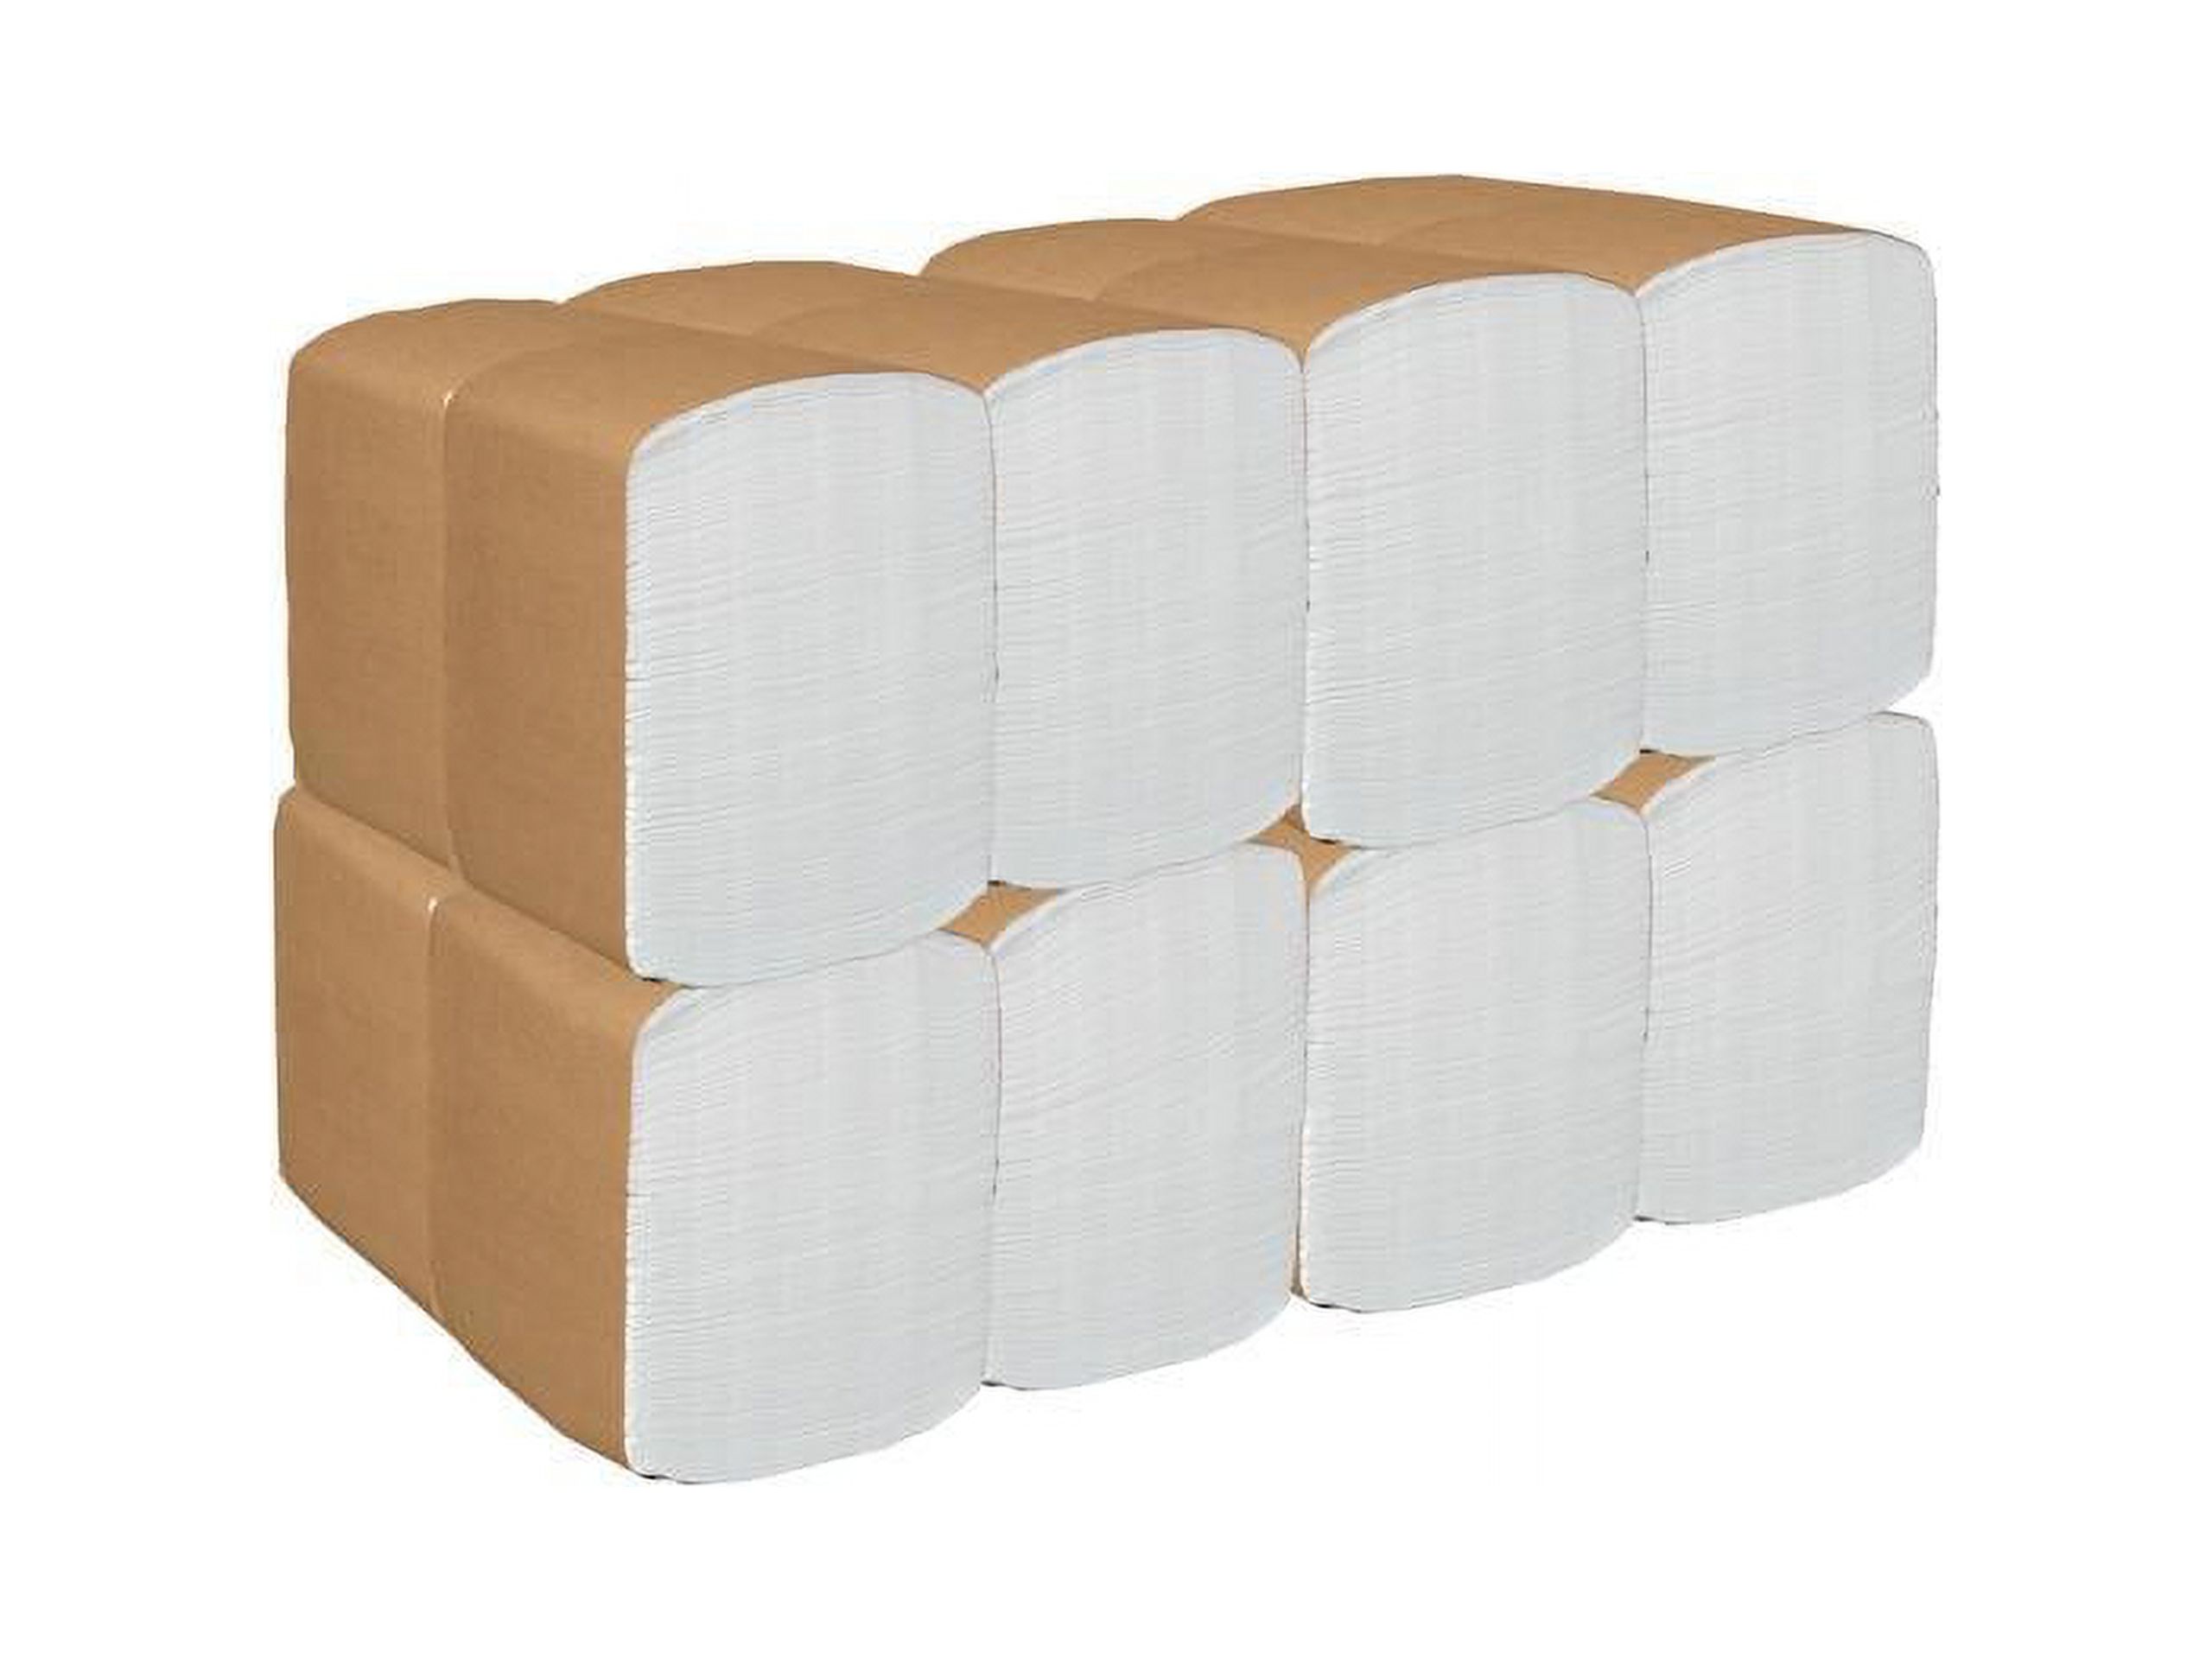 Scott Paper Dinner Napkins (98740), Disposable, White, 1per8 Fold, 1-Ply, 12 x 13 (Unfolded), 12 Packs of 500 Dinner Napkins (6,000 per Case) - image 3 of 4